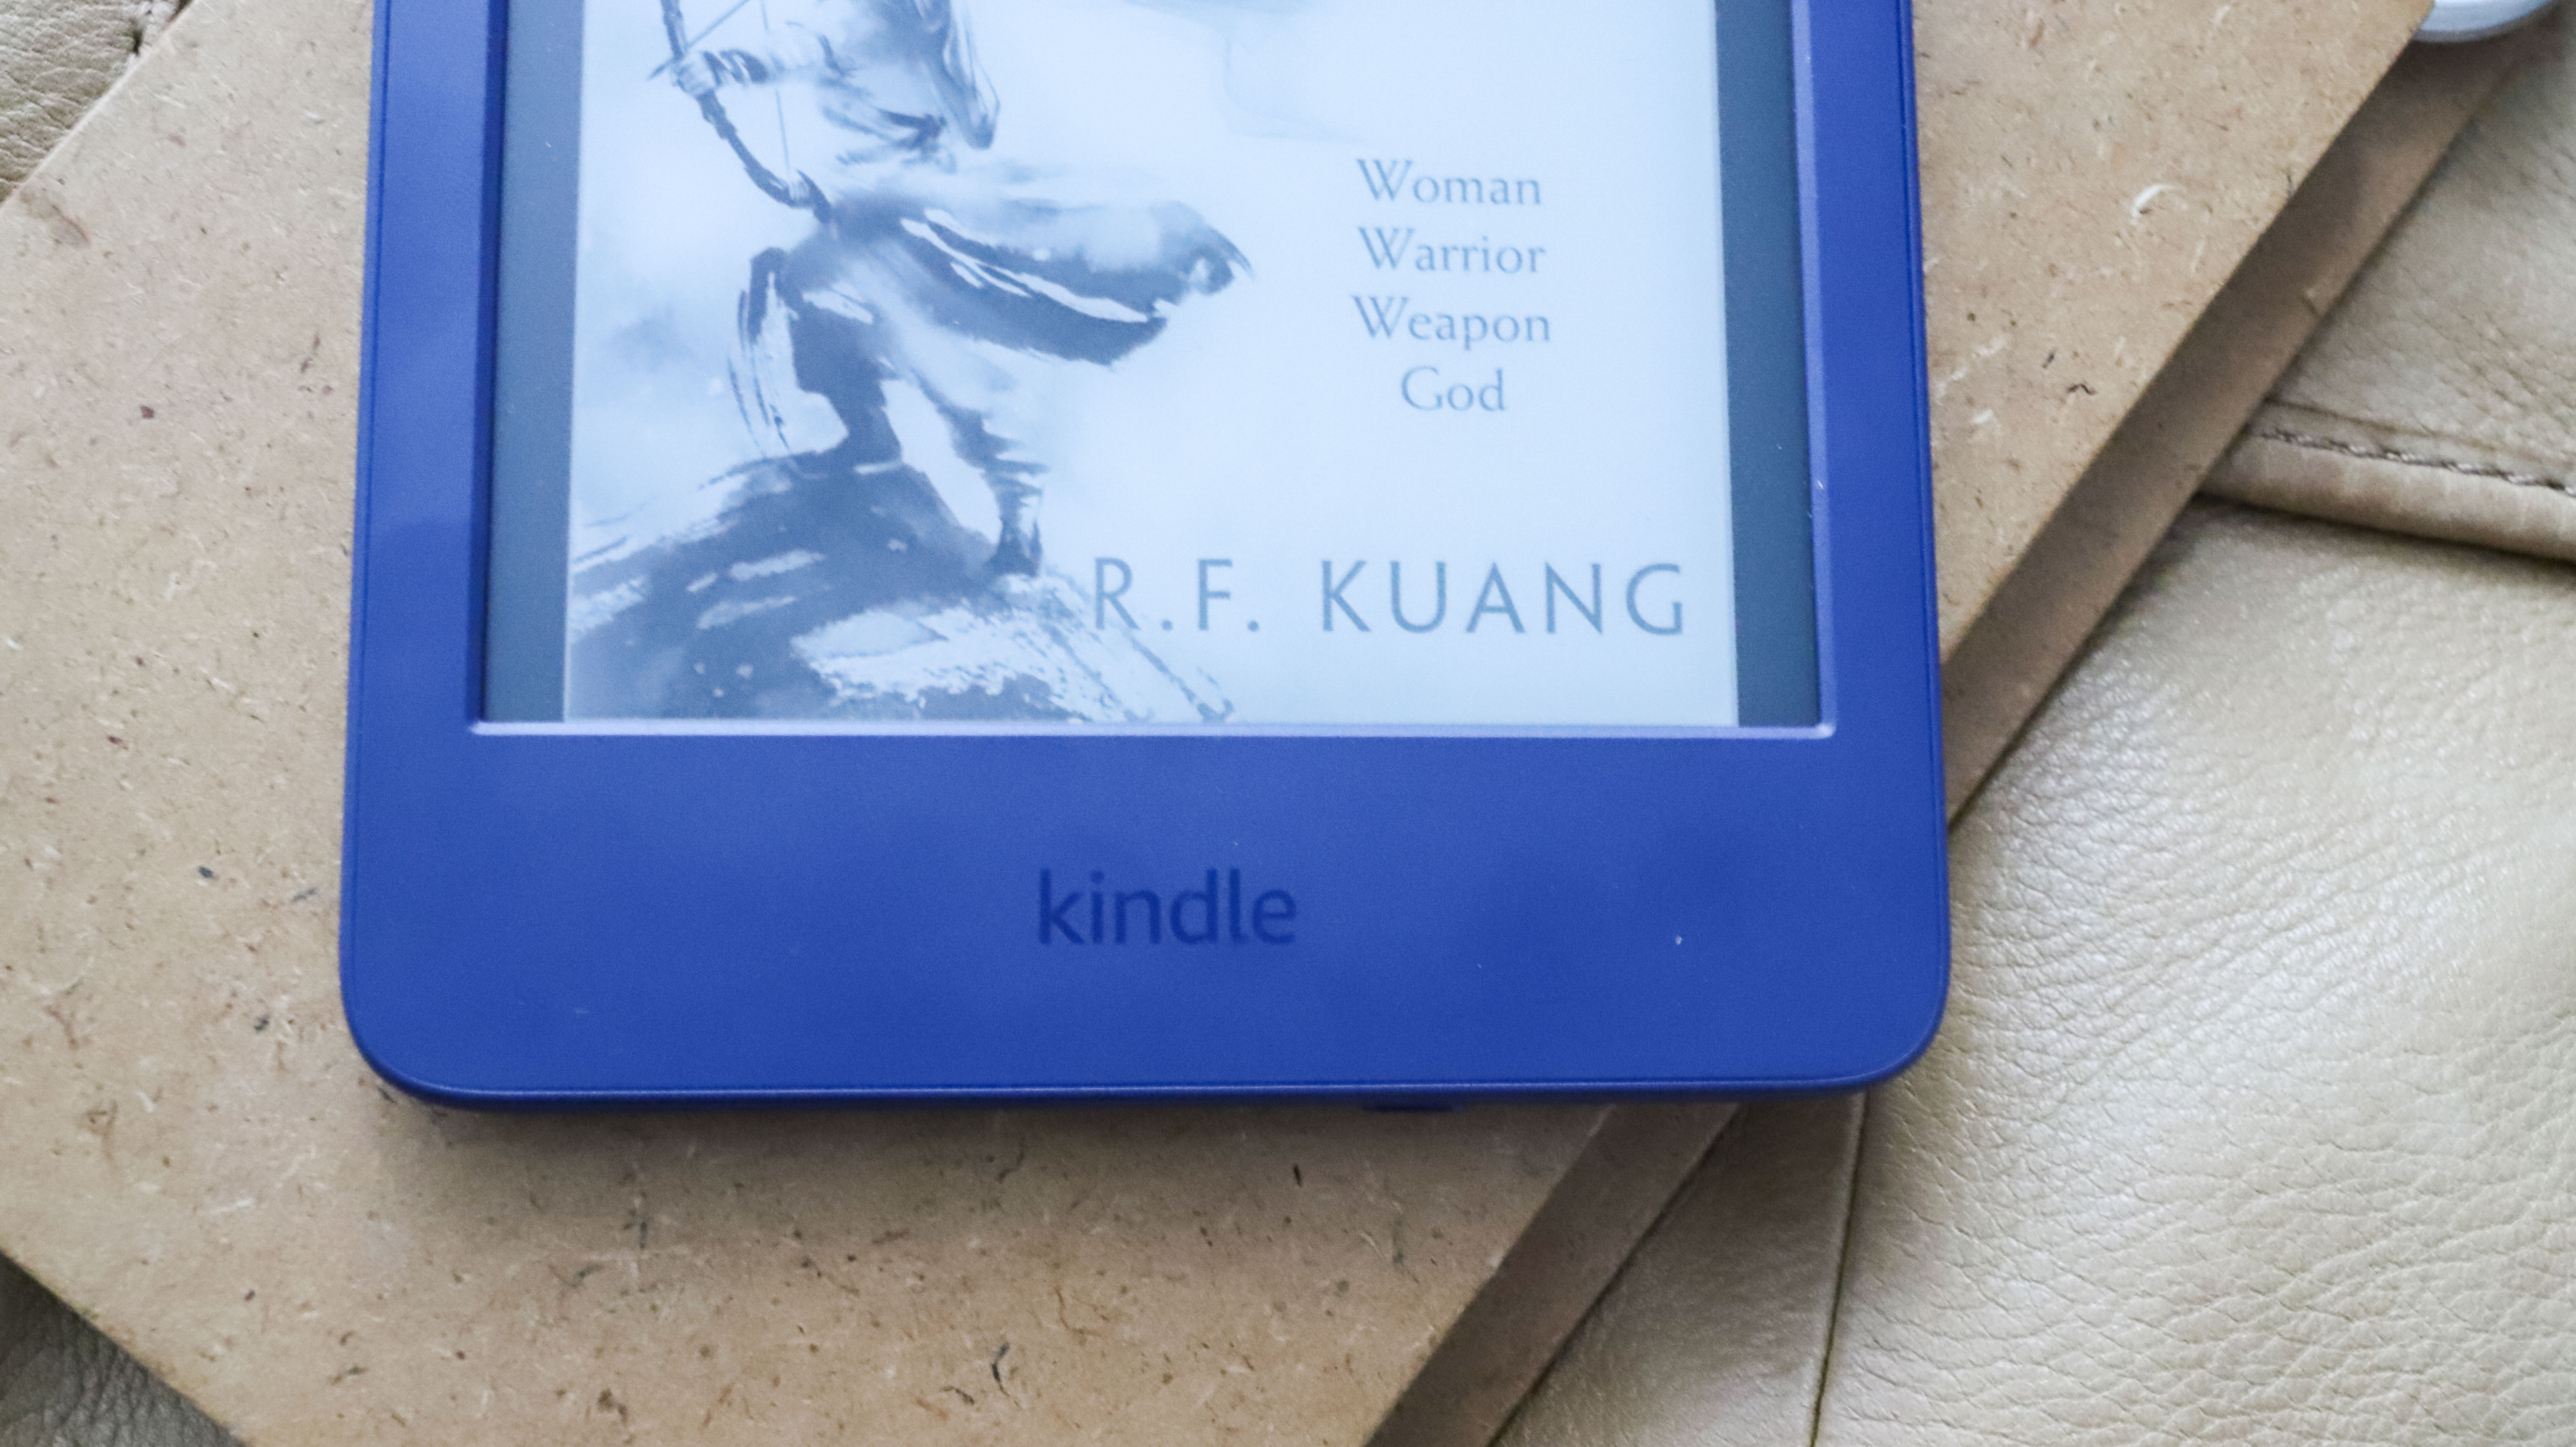 Kindle branding on bottom bezel of theAmazon Kindle 2022